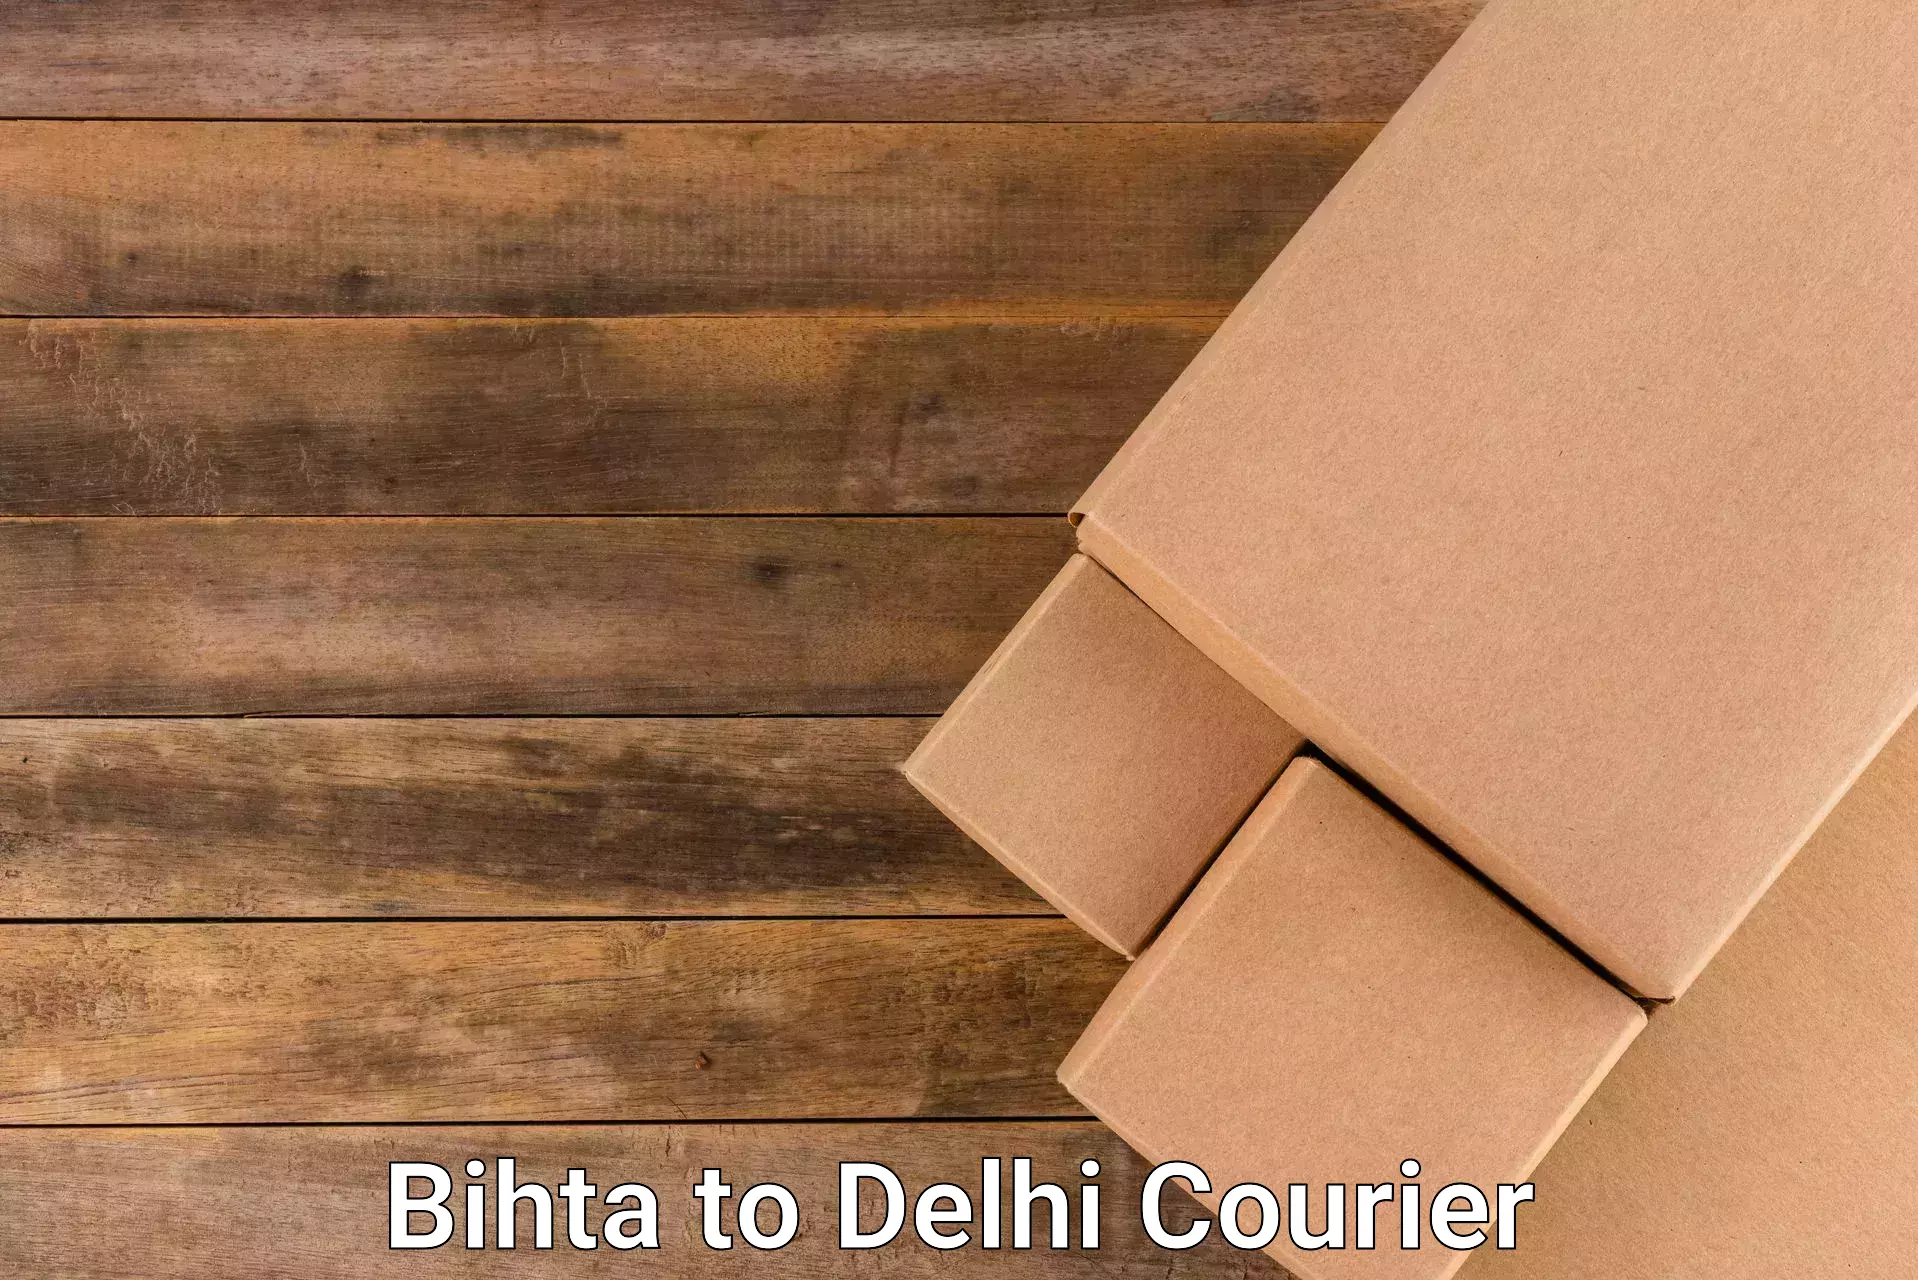 Cross-border shipping Bihta to Delhi